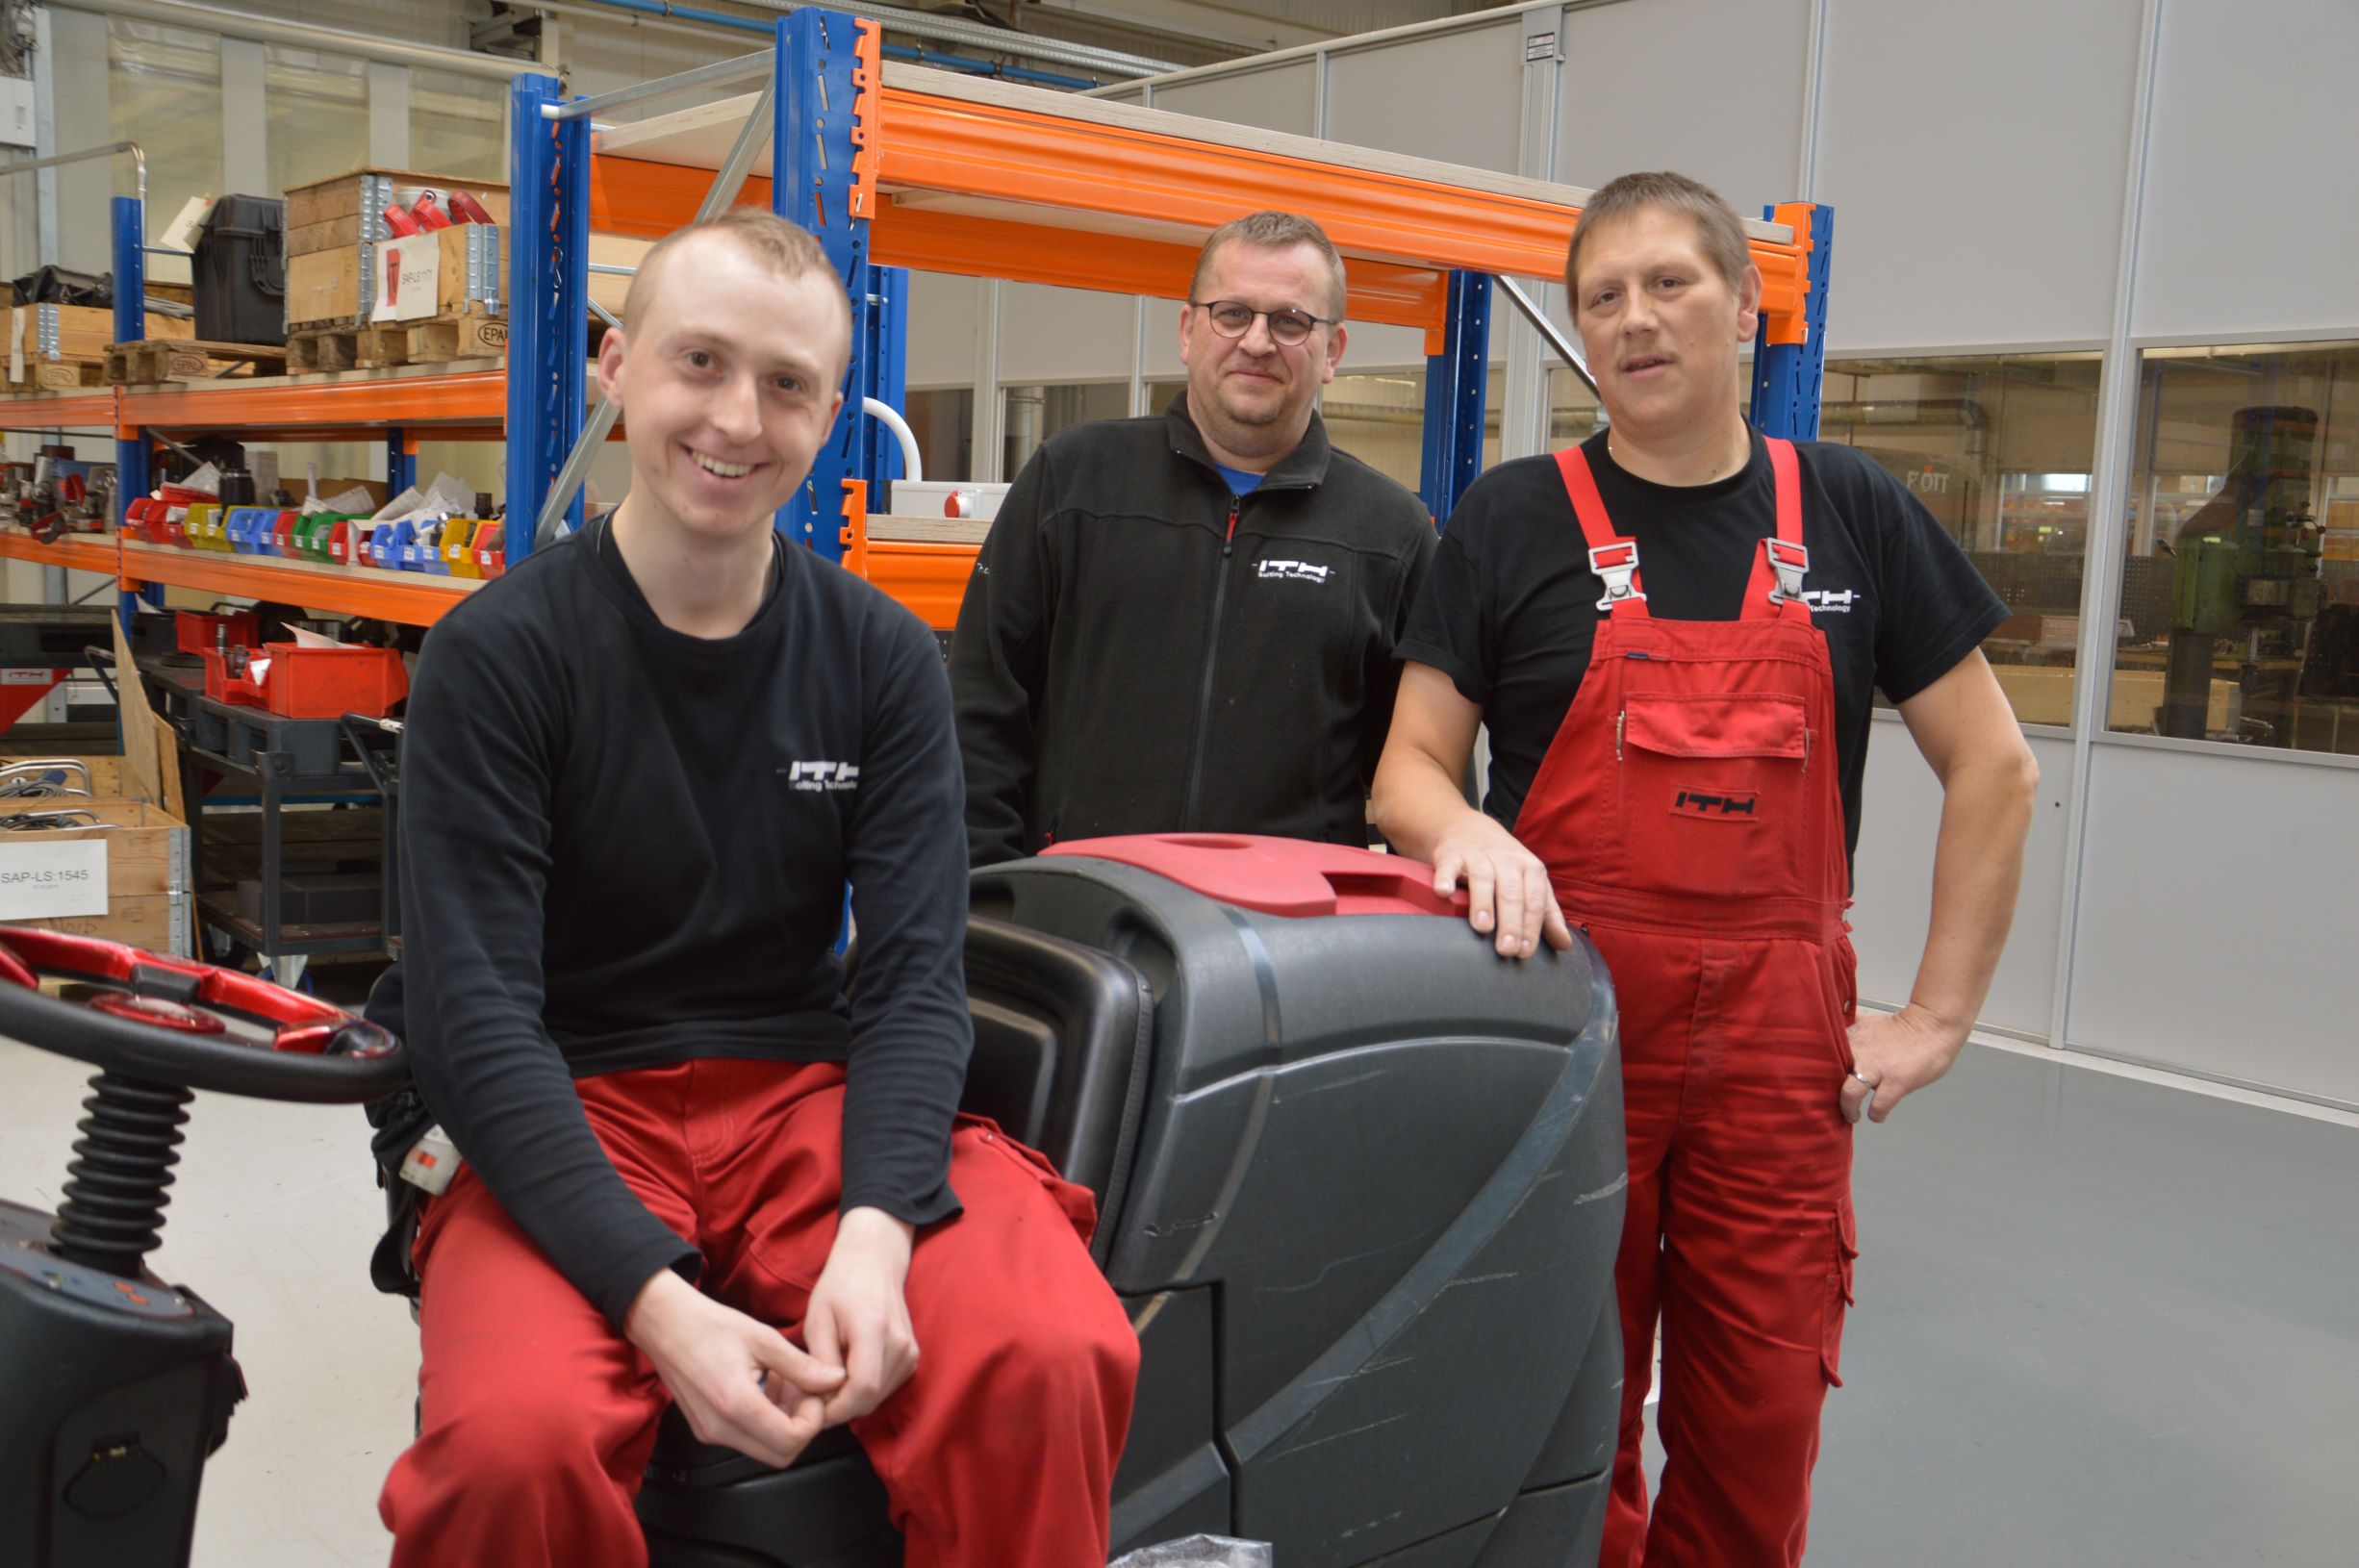 Das Foto zeigt links Jan-Peter Lübke auf seiner Reinigungsmaschine. Daneben stehen seine Kollegen Enrico Grabisnki und Martin Kramer.